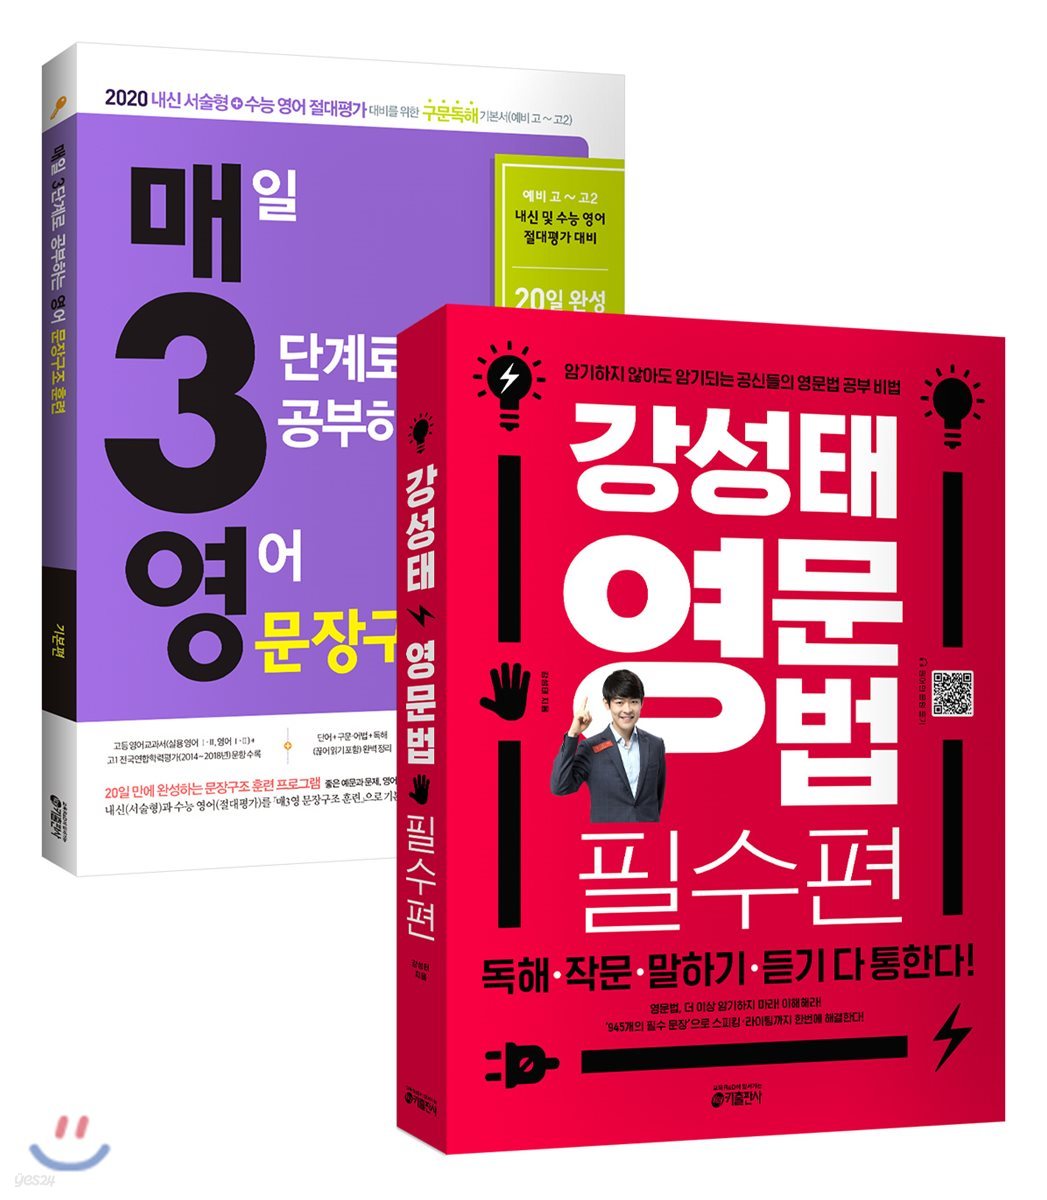 강성태 영문법 필수편 + 매3영 문장구조 훈련 (2019년) 세트